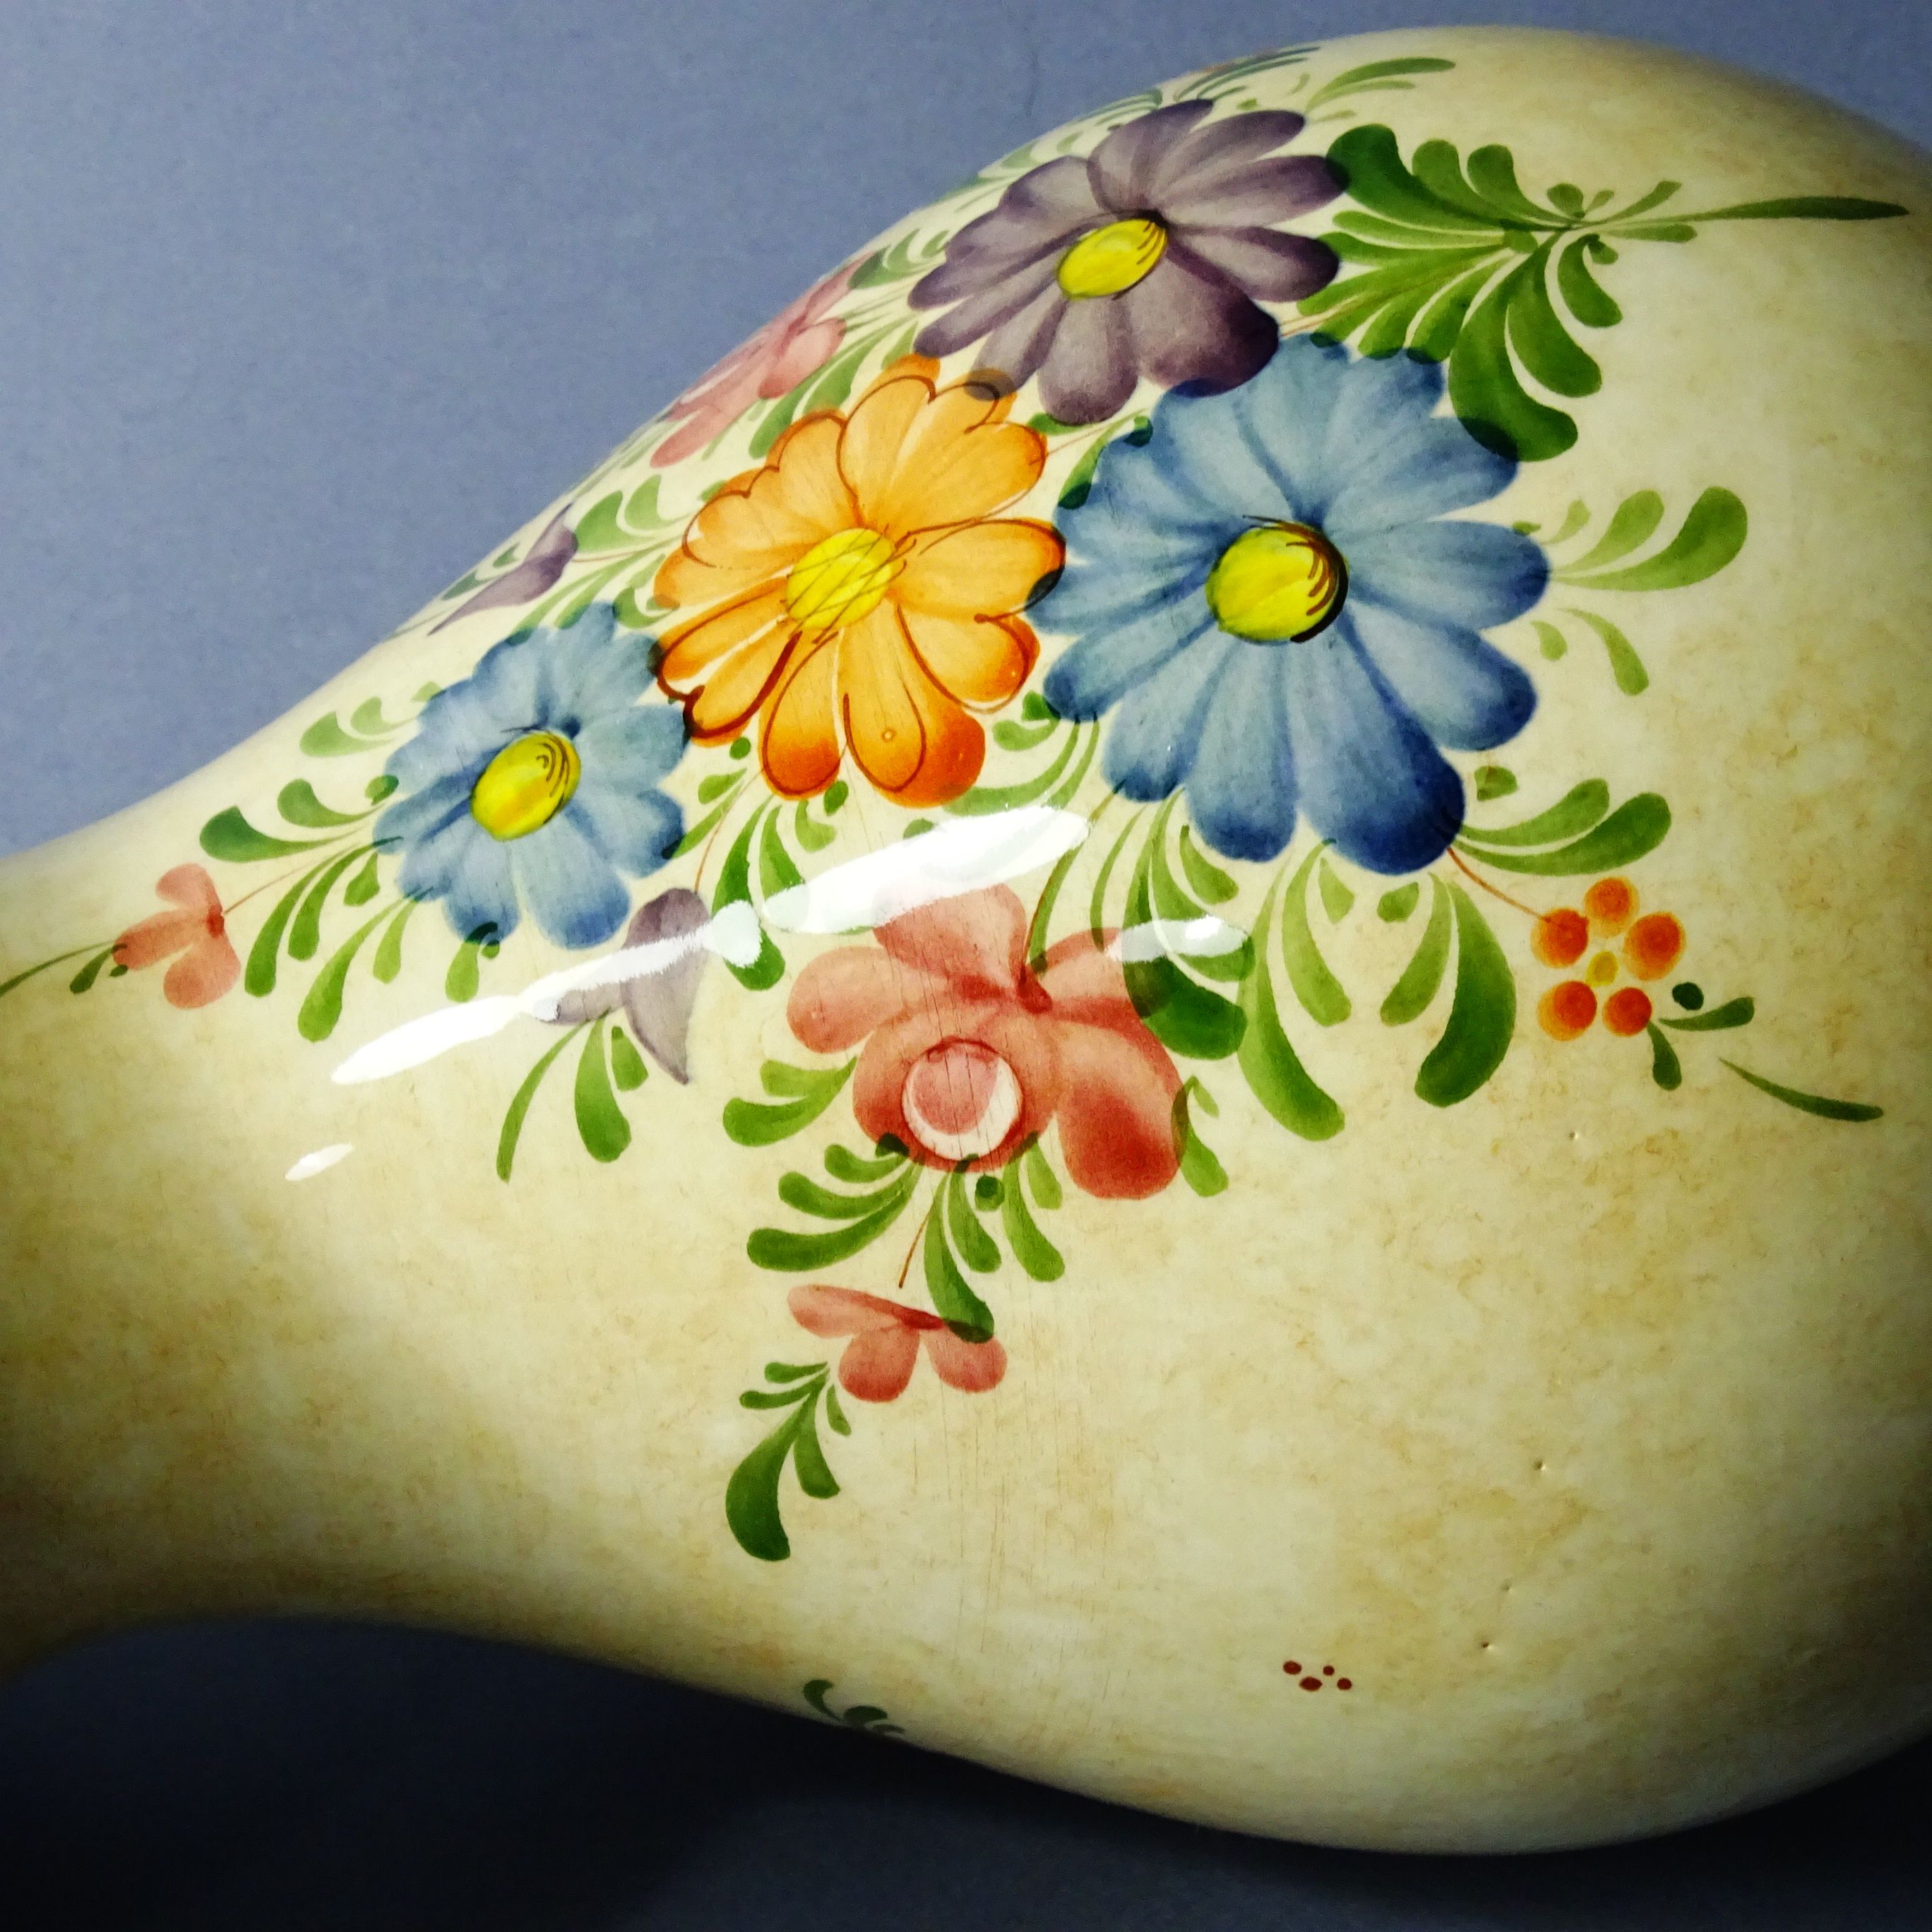 piękny ręcznie malowany duży wazon ceramiczny kwiaty